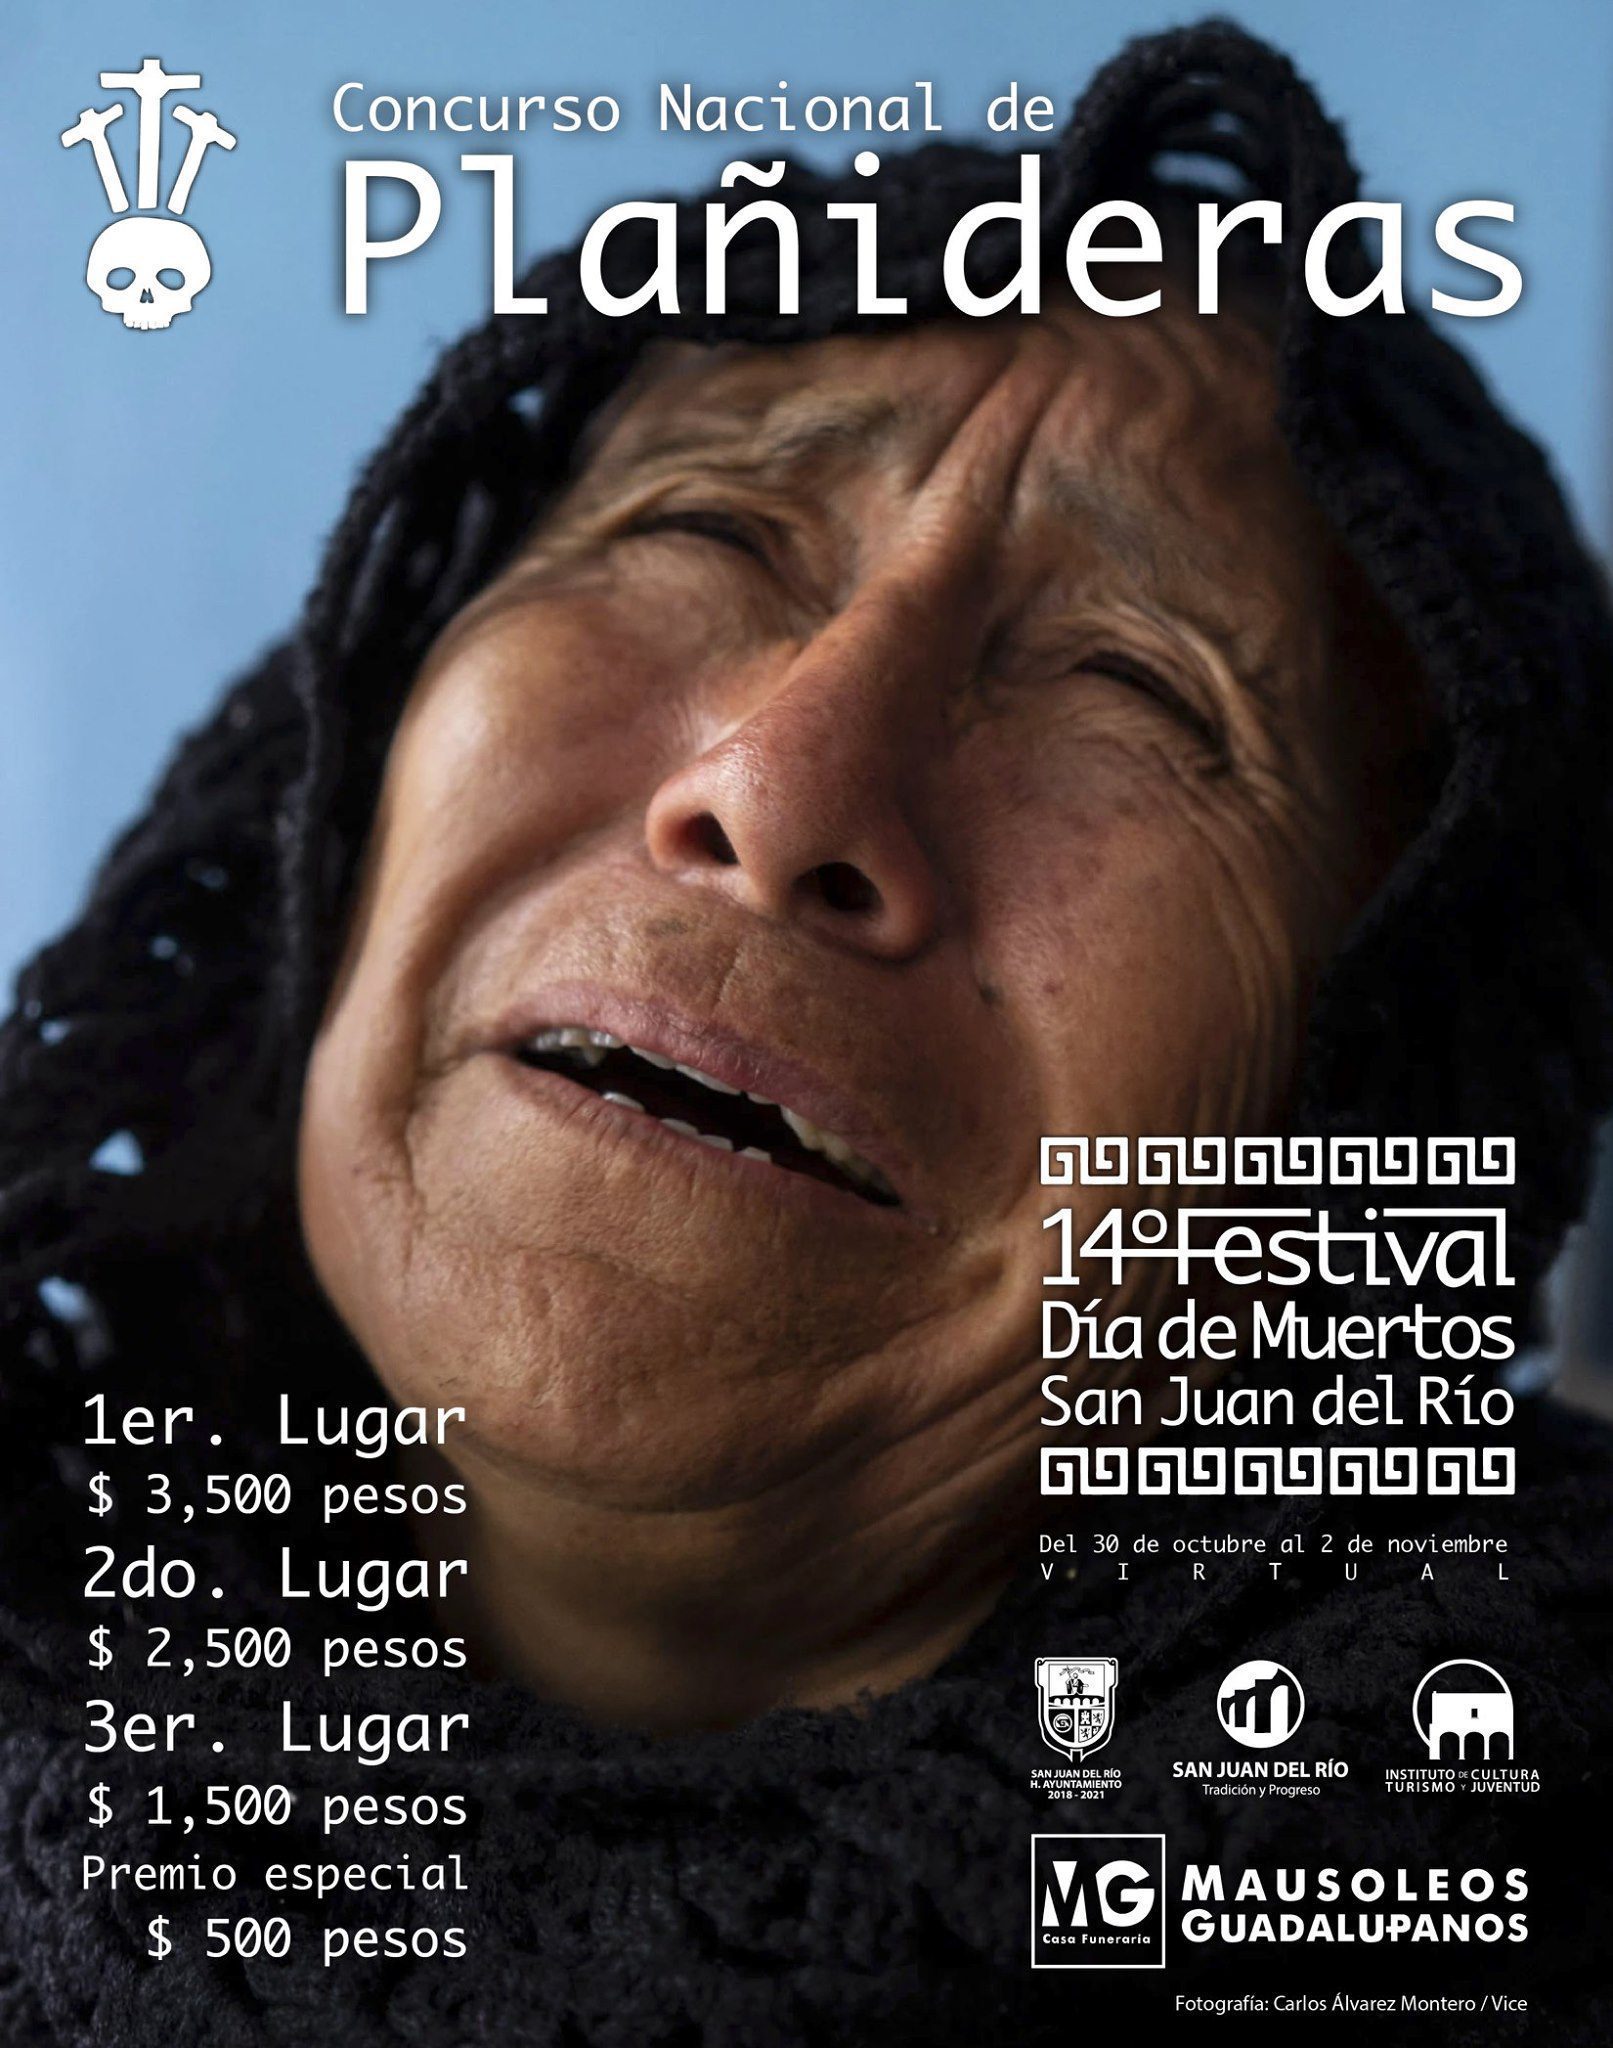 ¡Actrices del llanto! lanzan concurso de plañideras en Querétaro #VIDEO